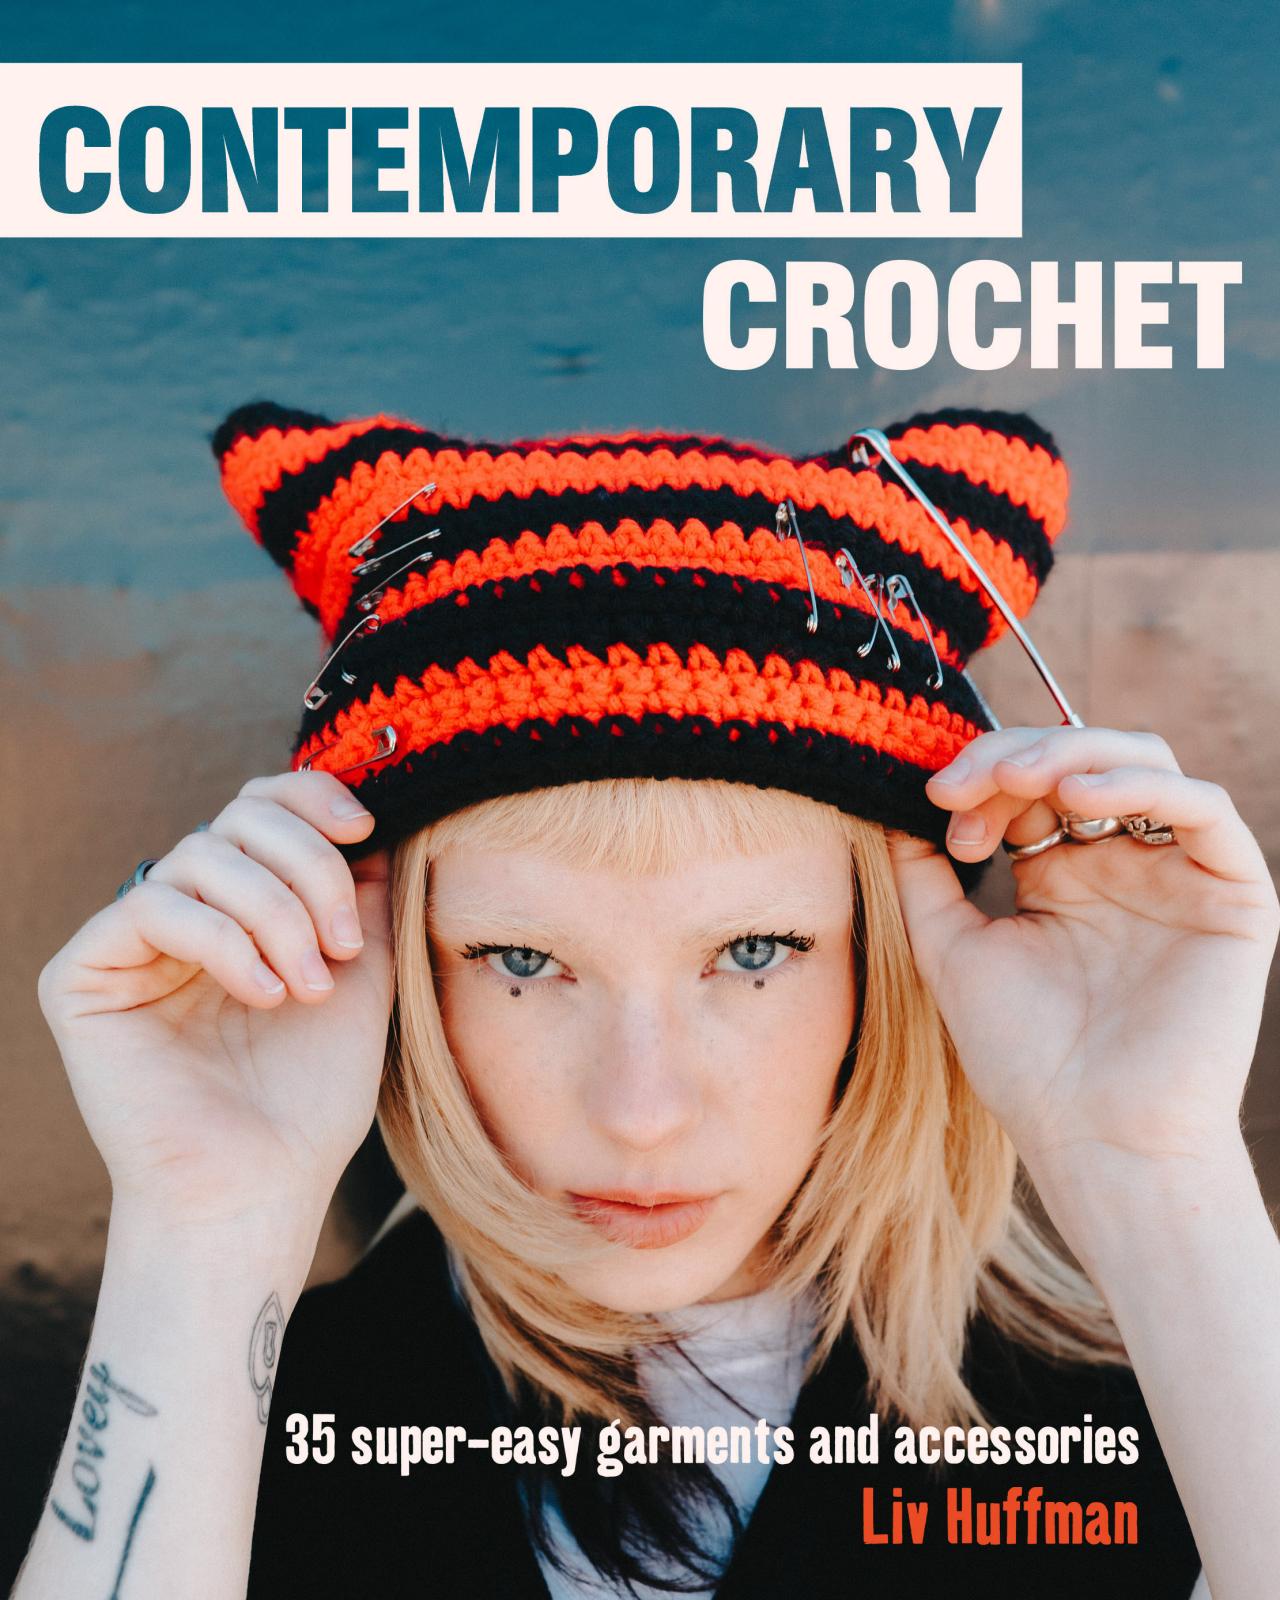 Get Crochet Patterns From Viral TikTok Star Liv Huffman's New Book